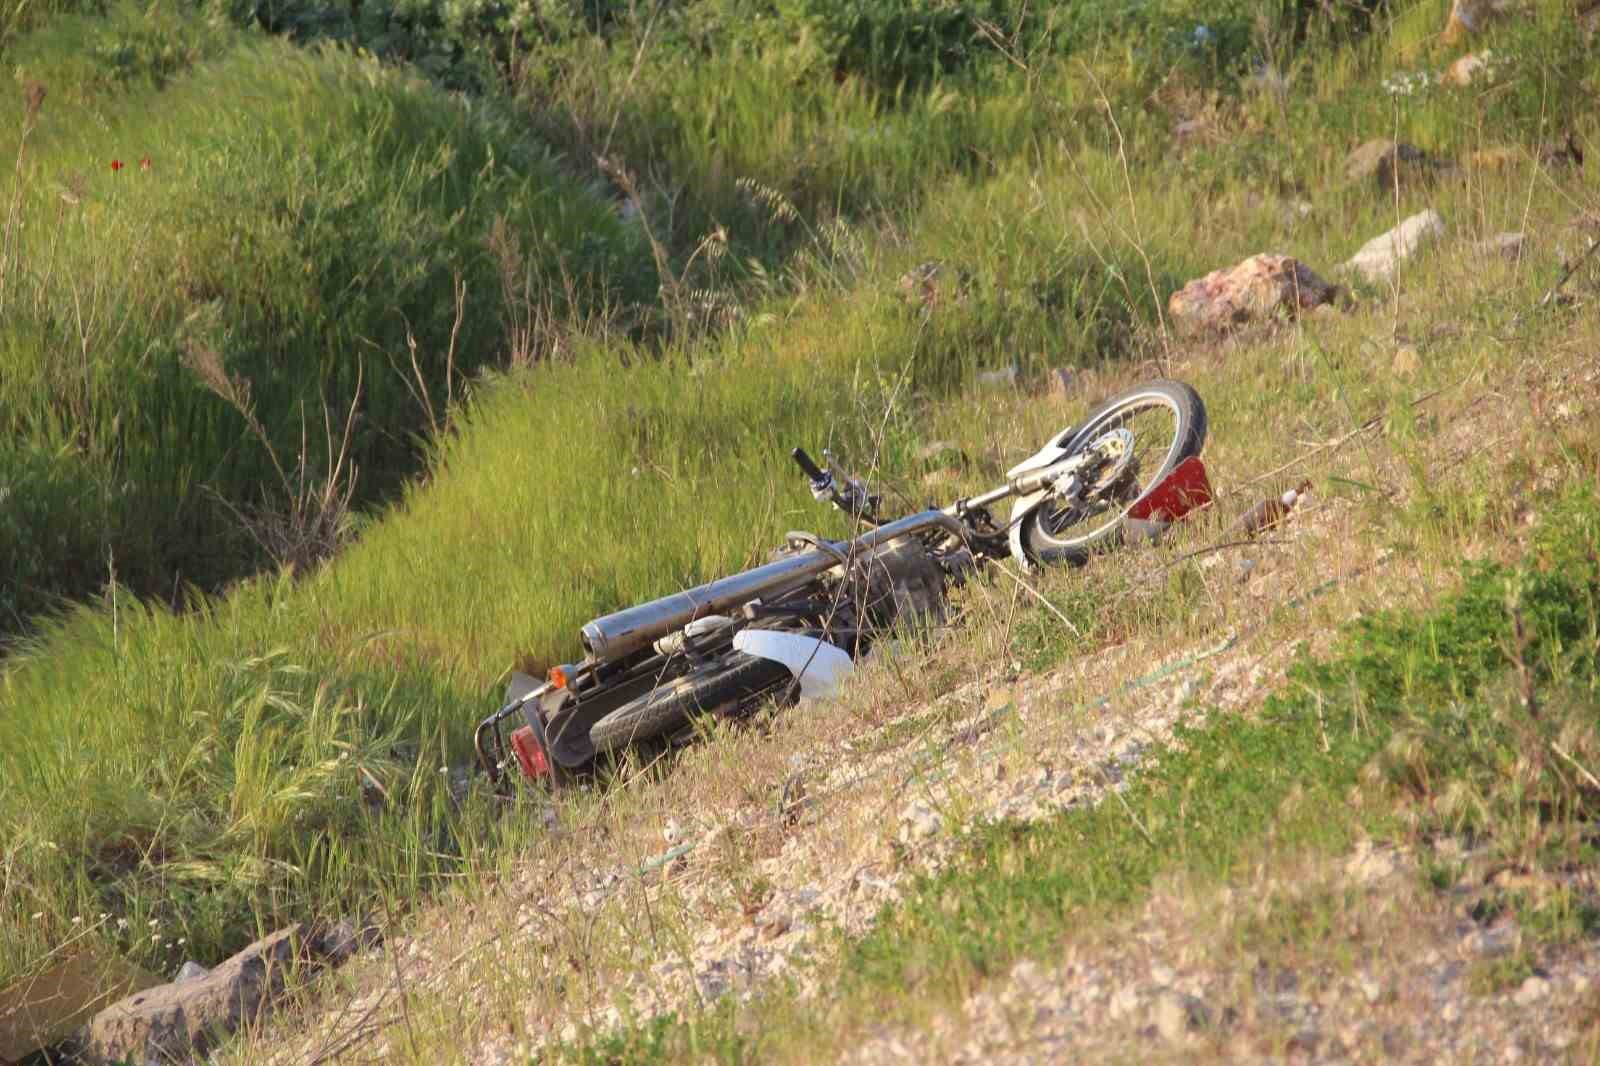 bariyerlere carpan motosiklet dere yatagina uctu 2 genc hayatini kaybetti 0 slp7Qe9w